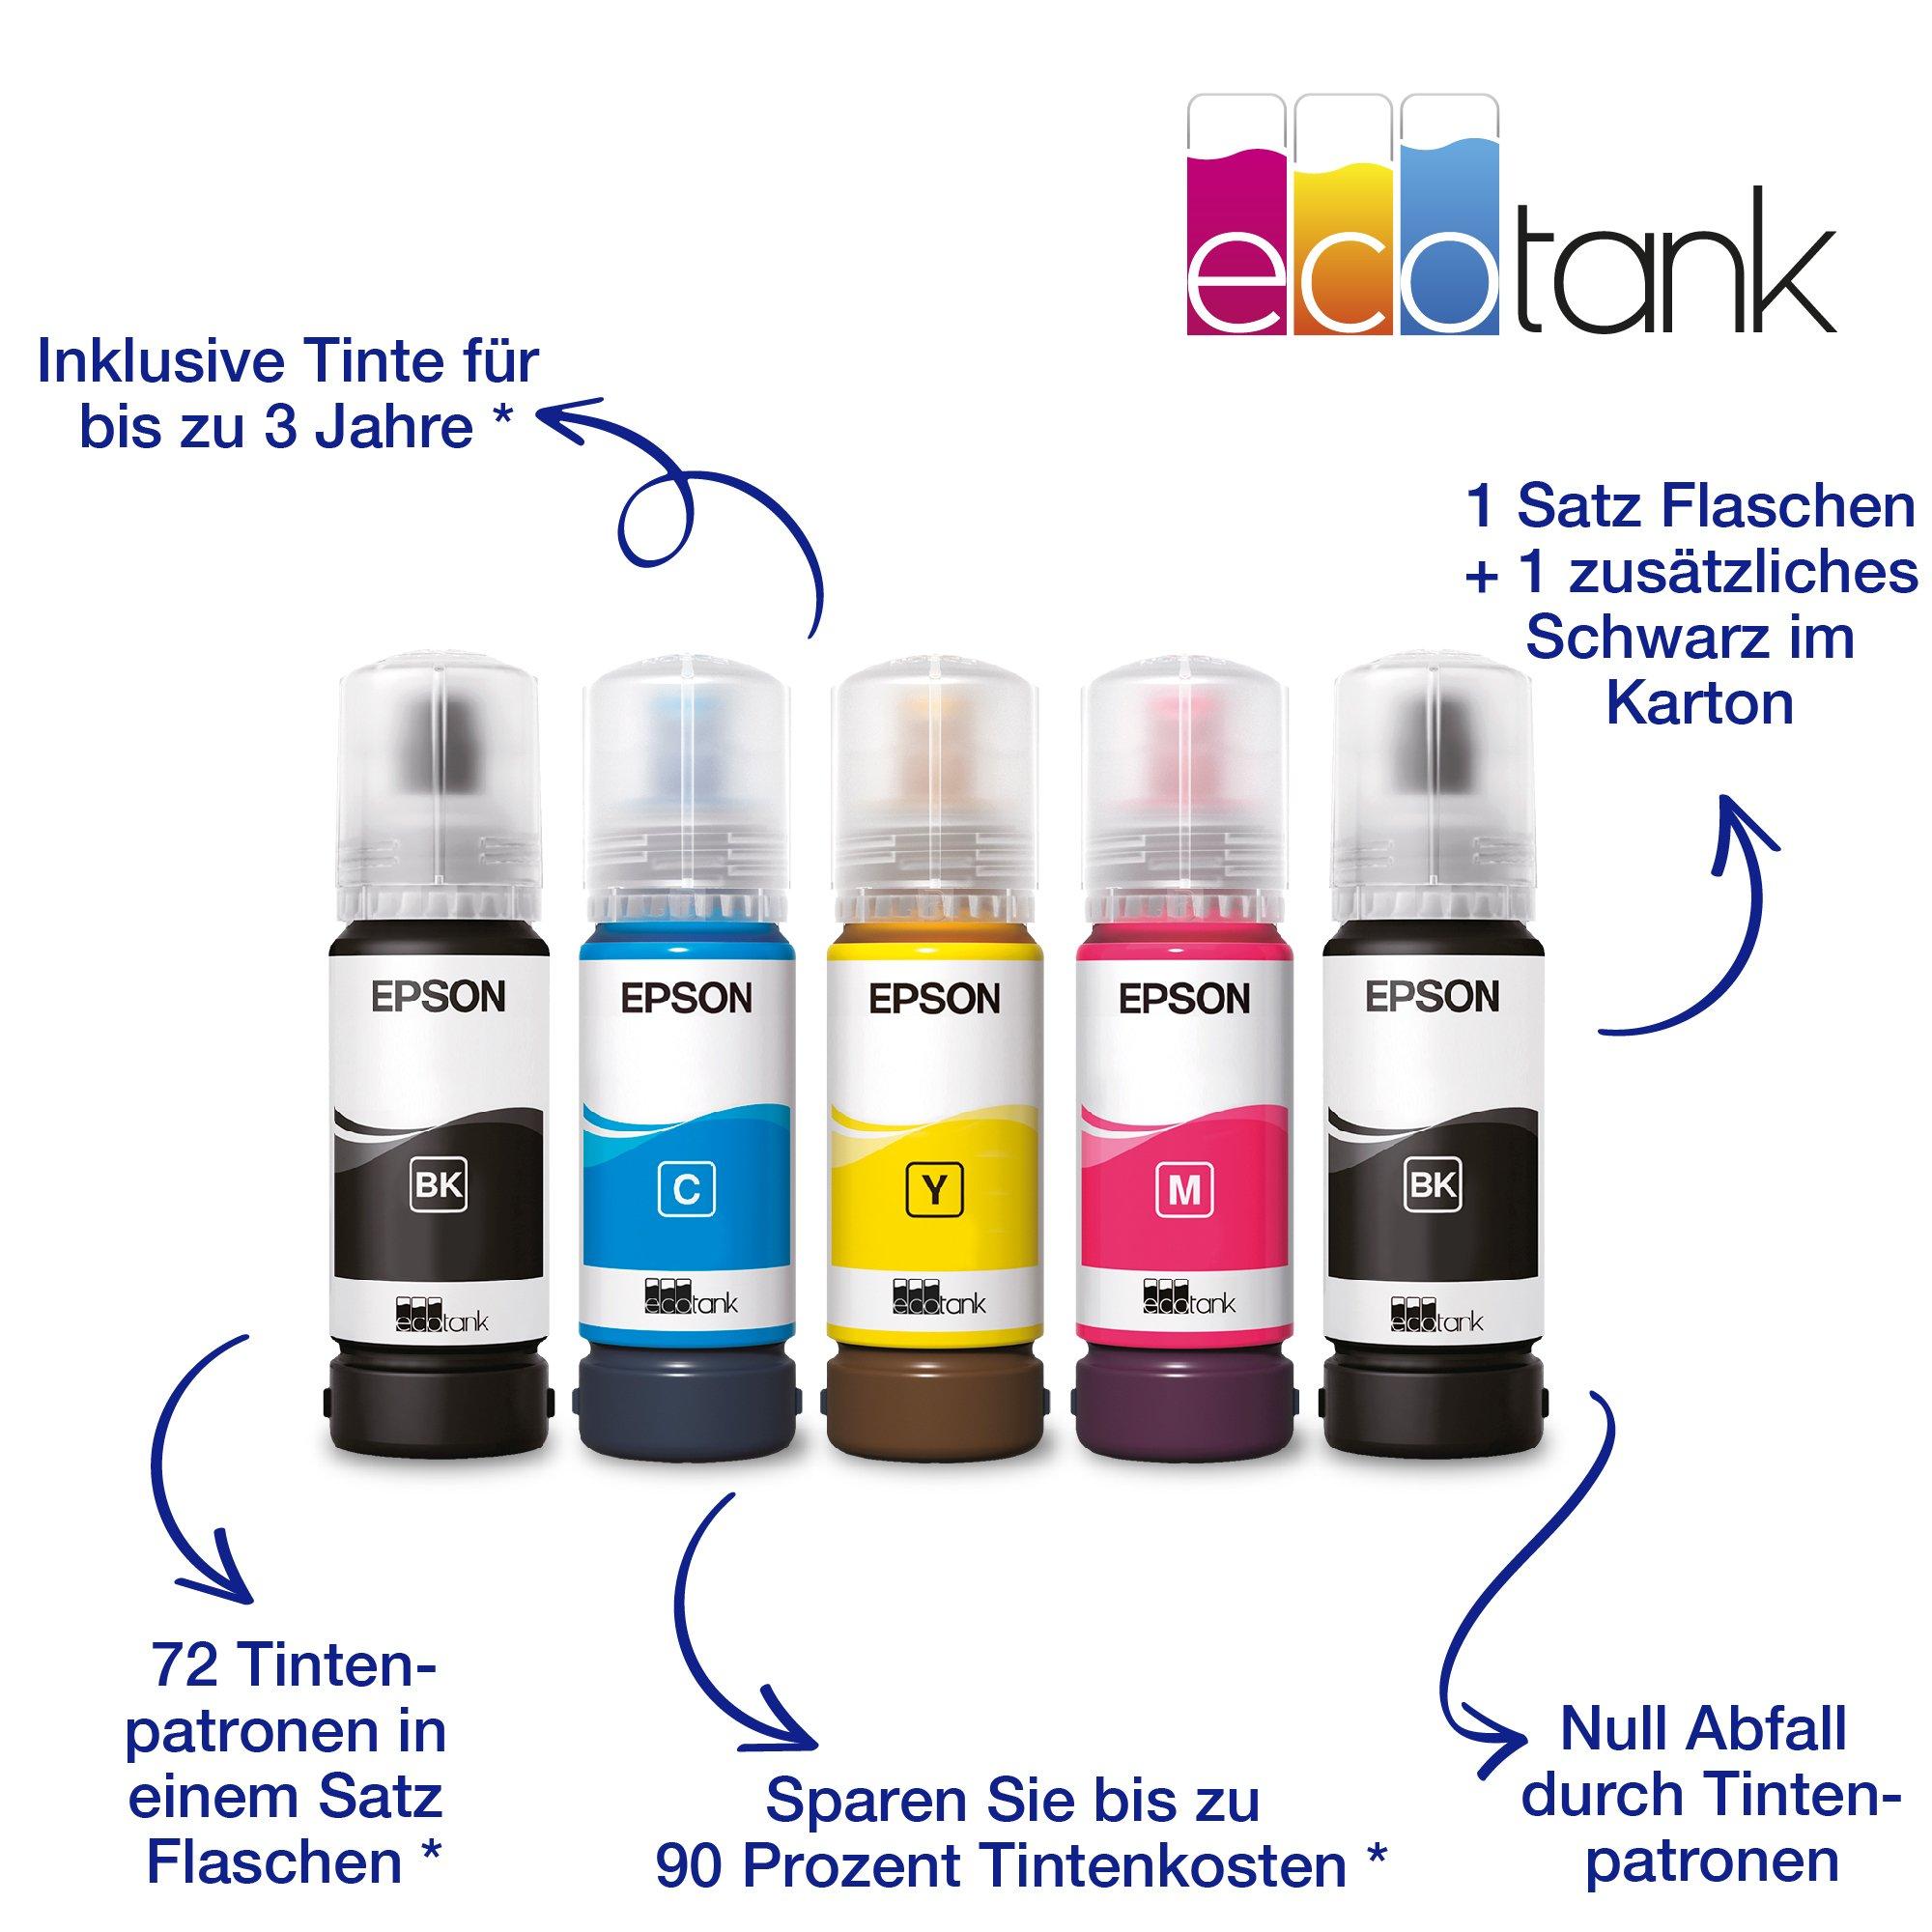 EcoTank ET-4810 | Consumer Deutschland | | Epson Produkte | | Tintenstrahldrucker Drucker